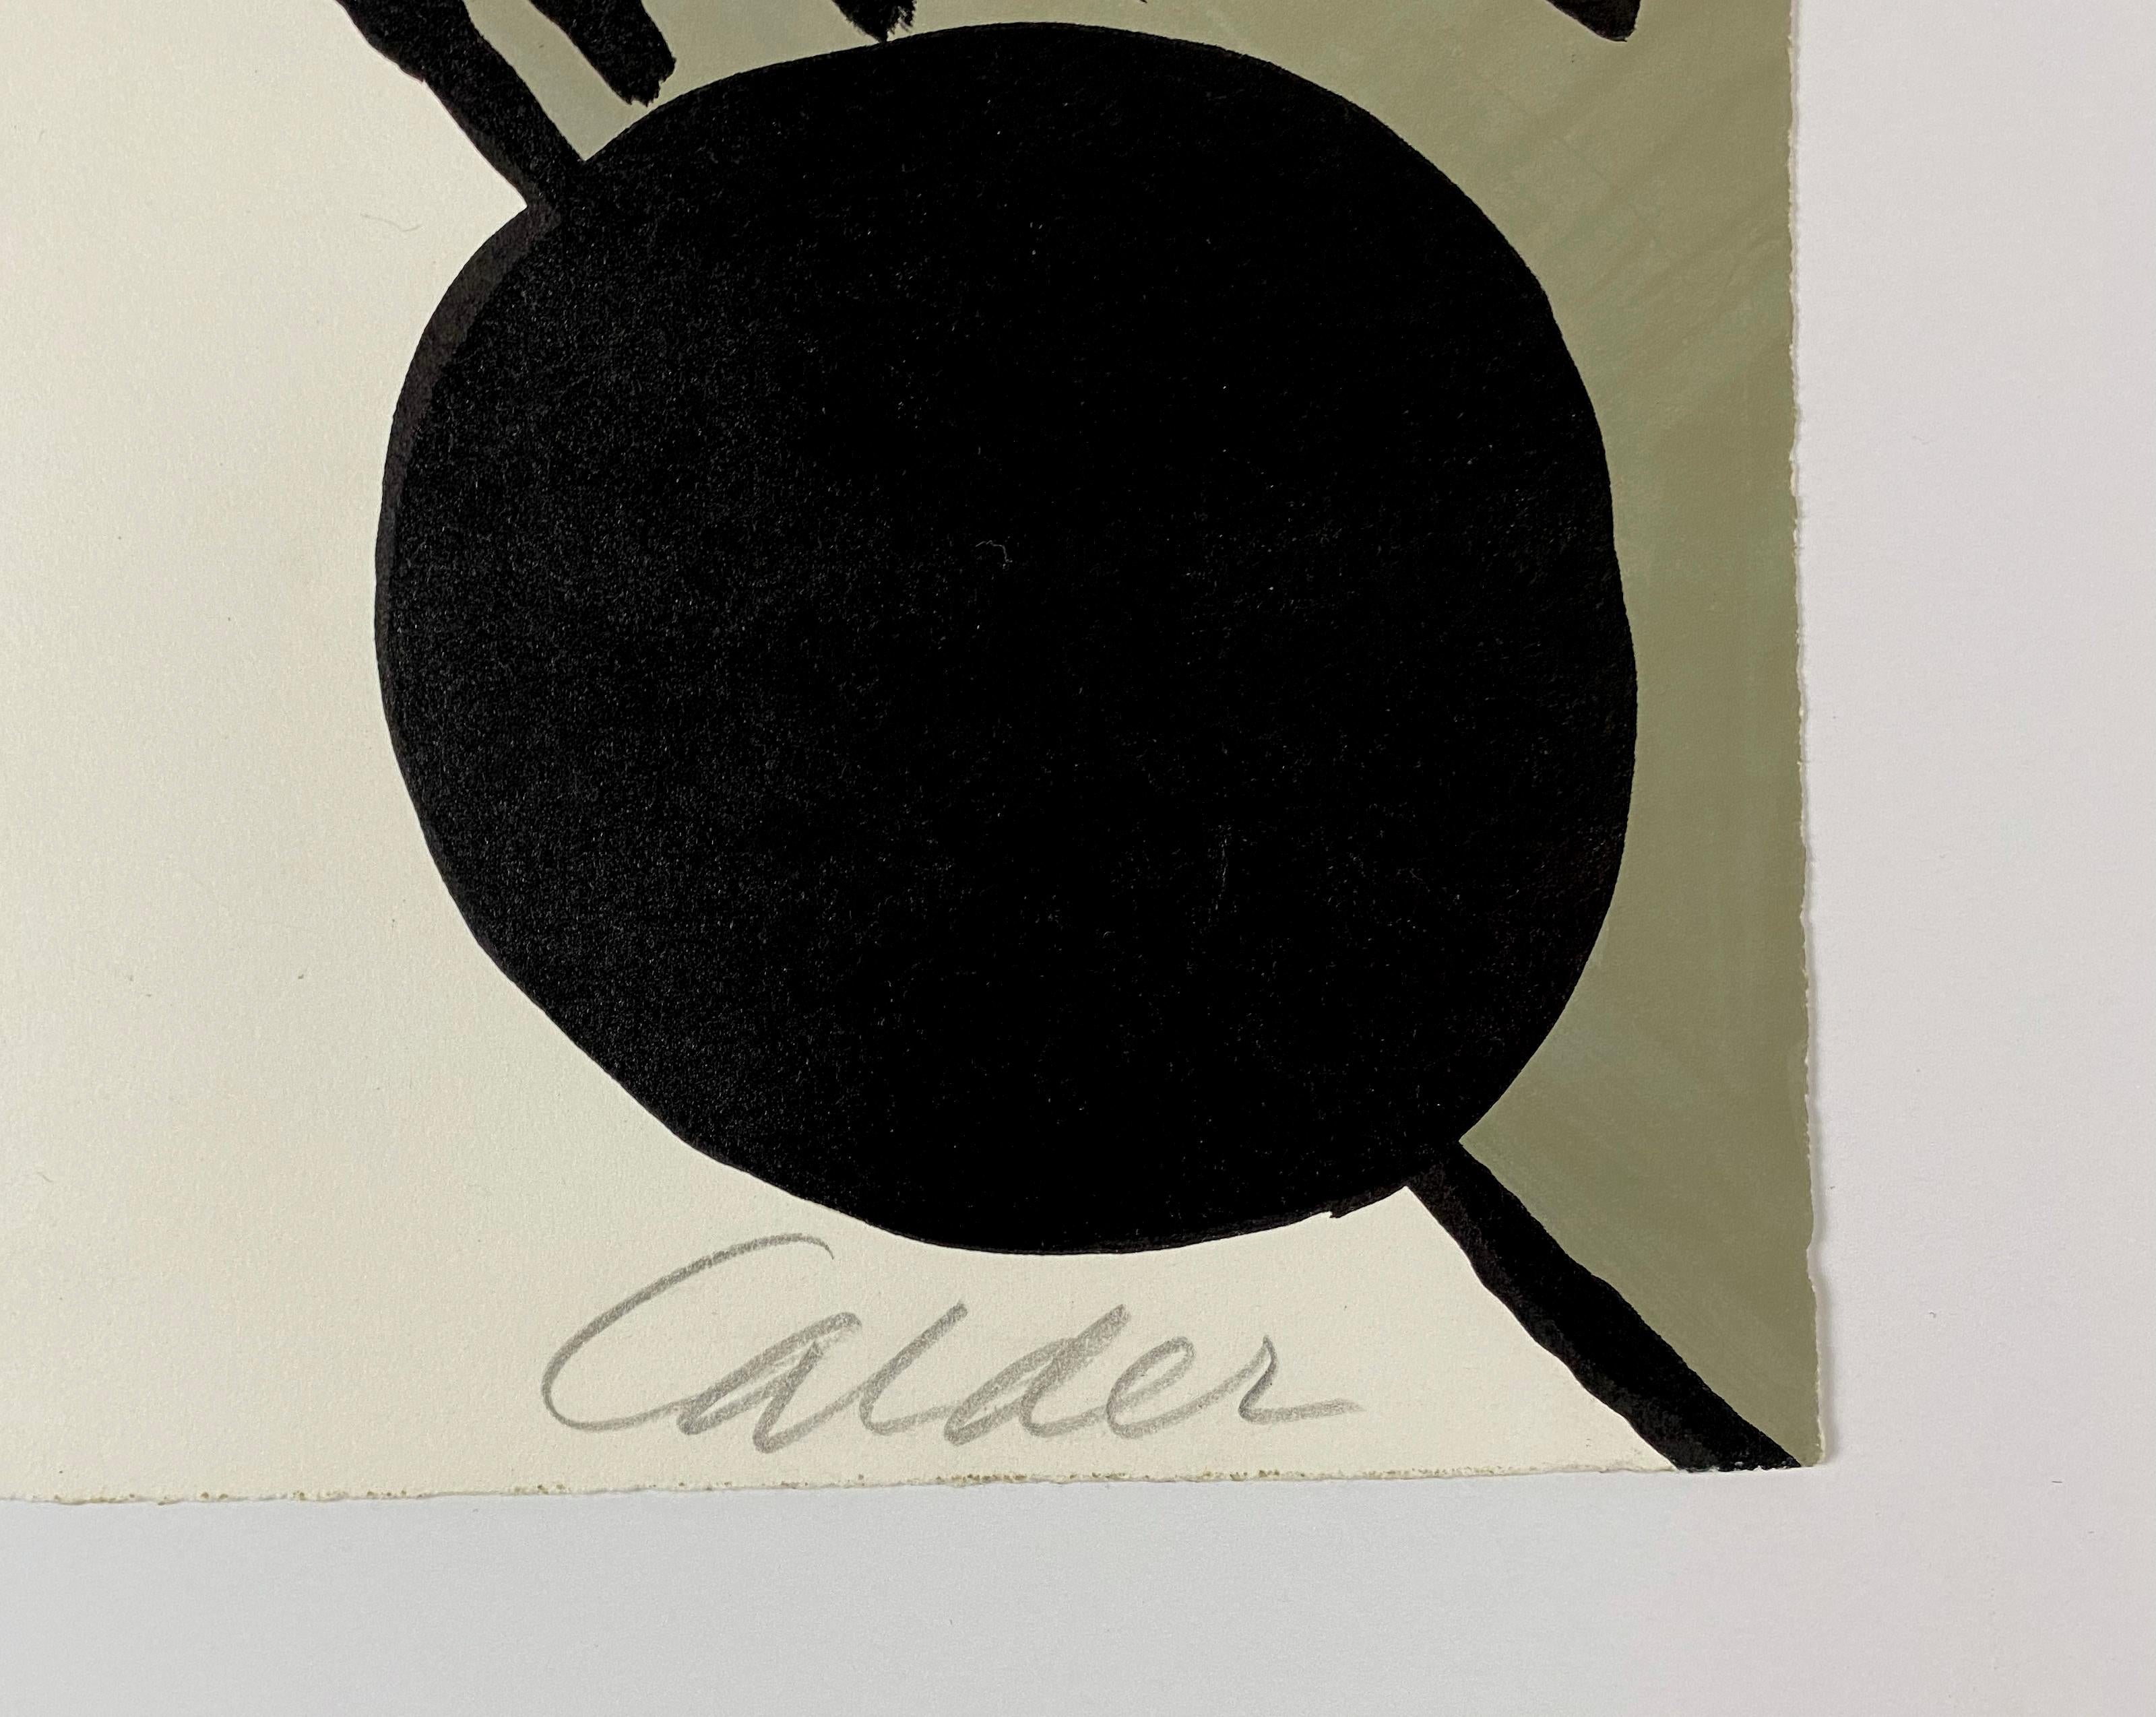 Künstler: Alexander Calder
Titel: Le Bateau Lavoir (Das Wäscheschiff)
Jahr: 1969
Medium: Lithographie
Auflage: 73/75
Nummerierung 73/75 mit Bleistift am unteren Rand   
Signiert unten rechts
Abmessungen: 21.75 in x 29.5 in 
Zustand: Gut

